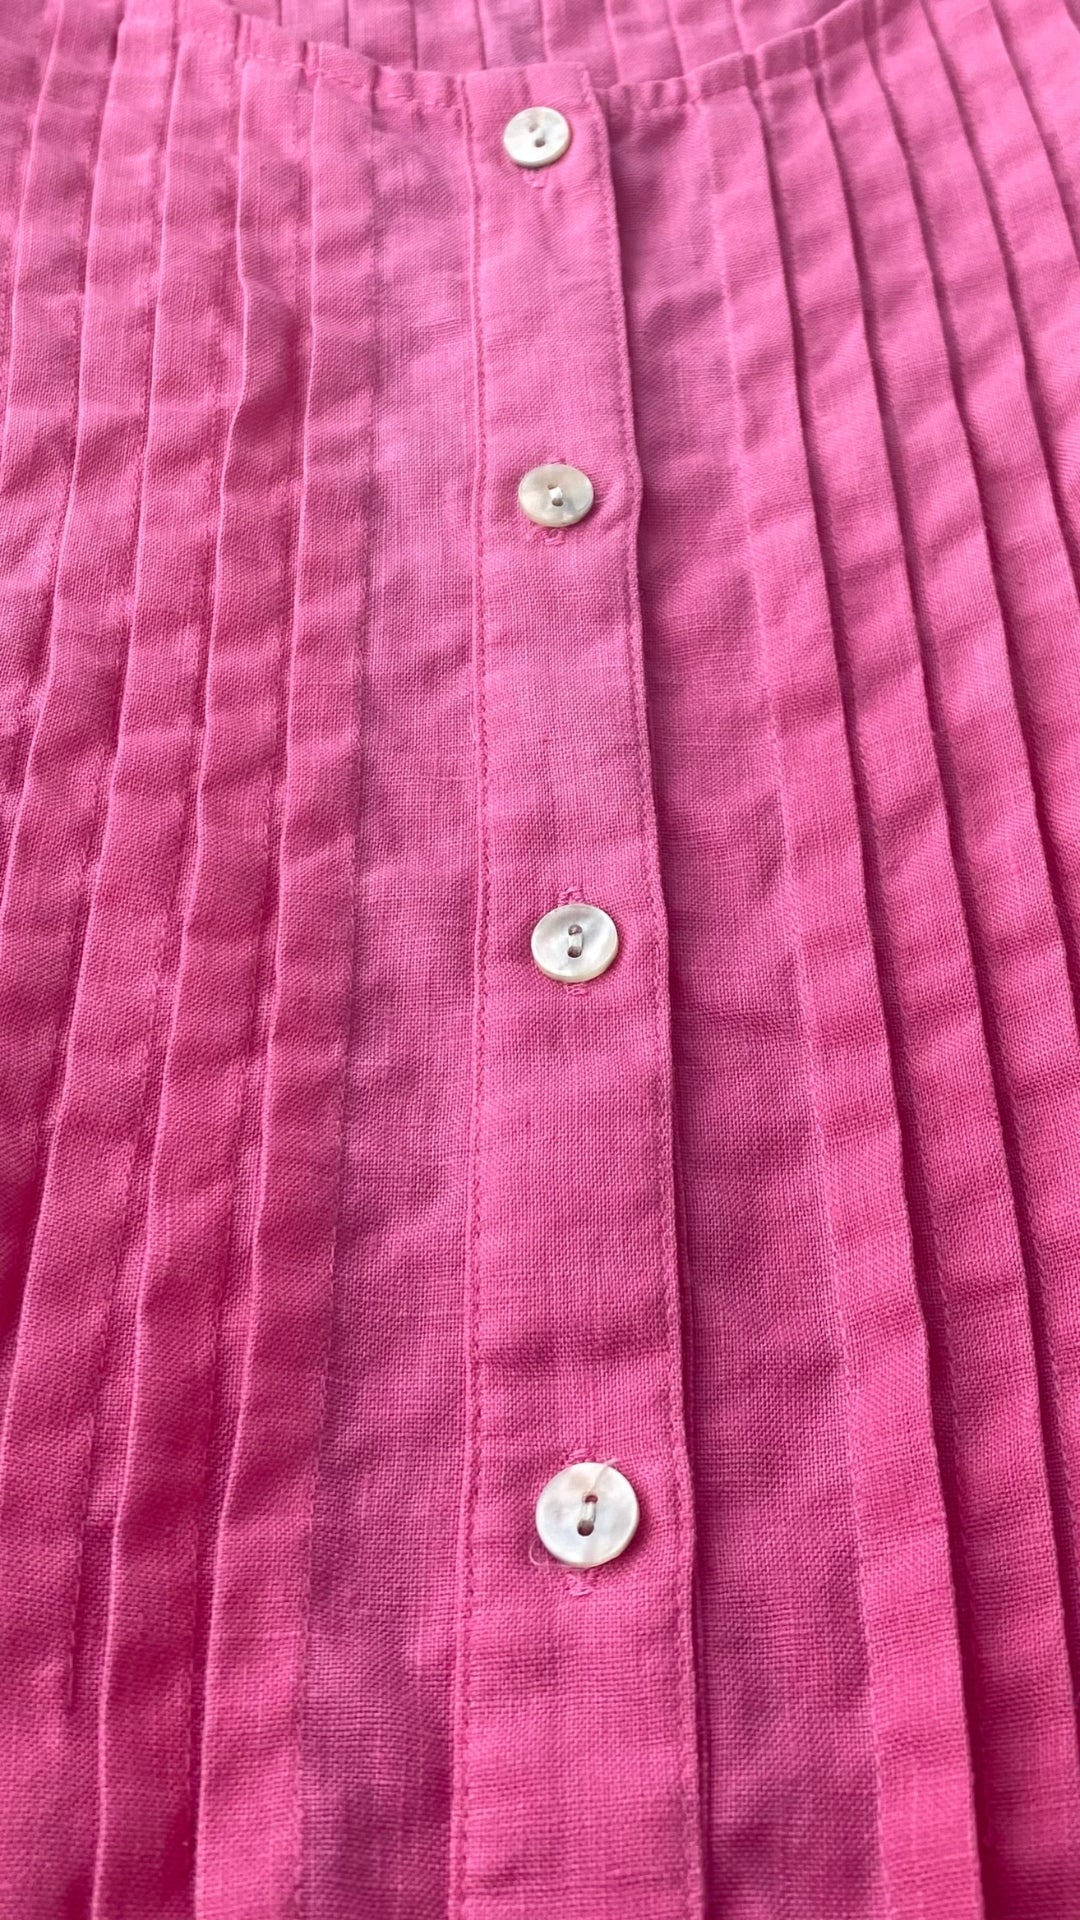 Blouse sans manches en lin rose, corsage plissé, Jones New York Sport, taille small. Vue des détails à l'avant.